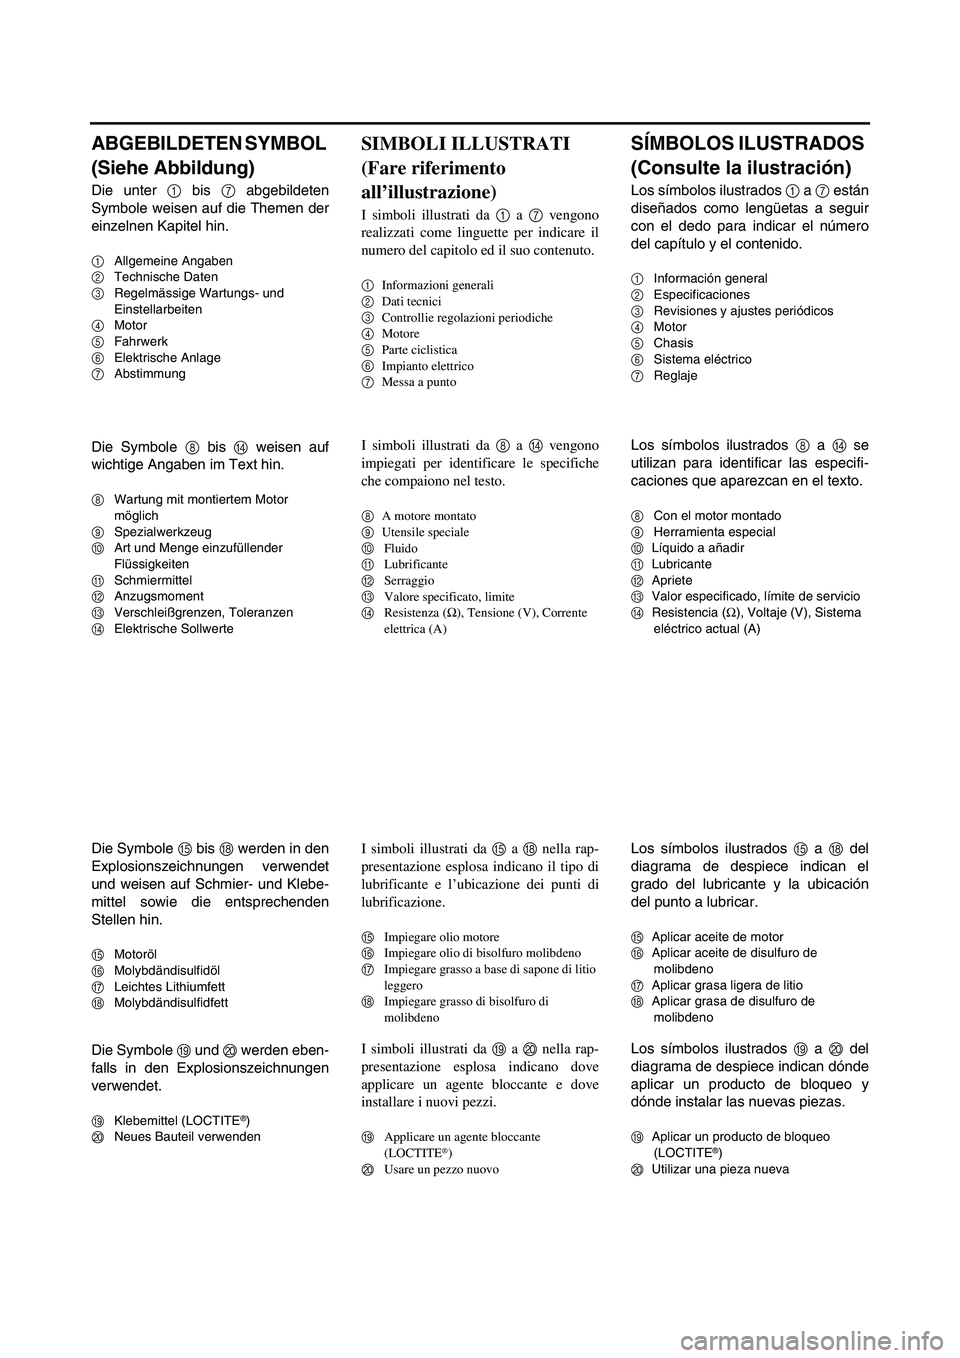 YAMAHA WR 250F 2005  Manuale de Empleo (in Spanish) ABGEBILDETEN SYMBOL 
(Siehe Abbildung)
Die unter 1 bis 7 abgebildeten
Symbole weisen auf die Themen der
einzelnen Kapitel hin.
1Allgemeine Angaben
2Technische Daten
3Regelmässige Wartungs- und 
Einst